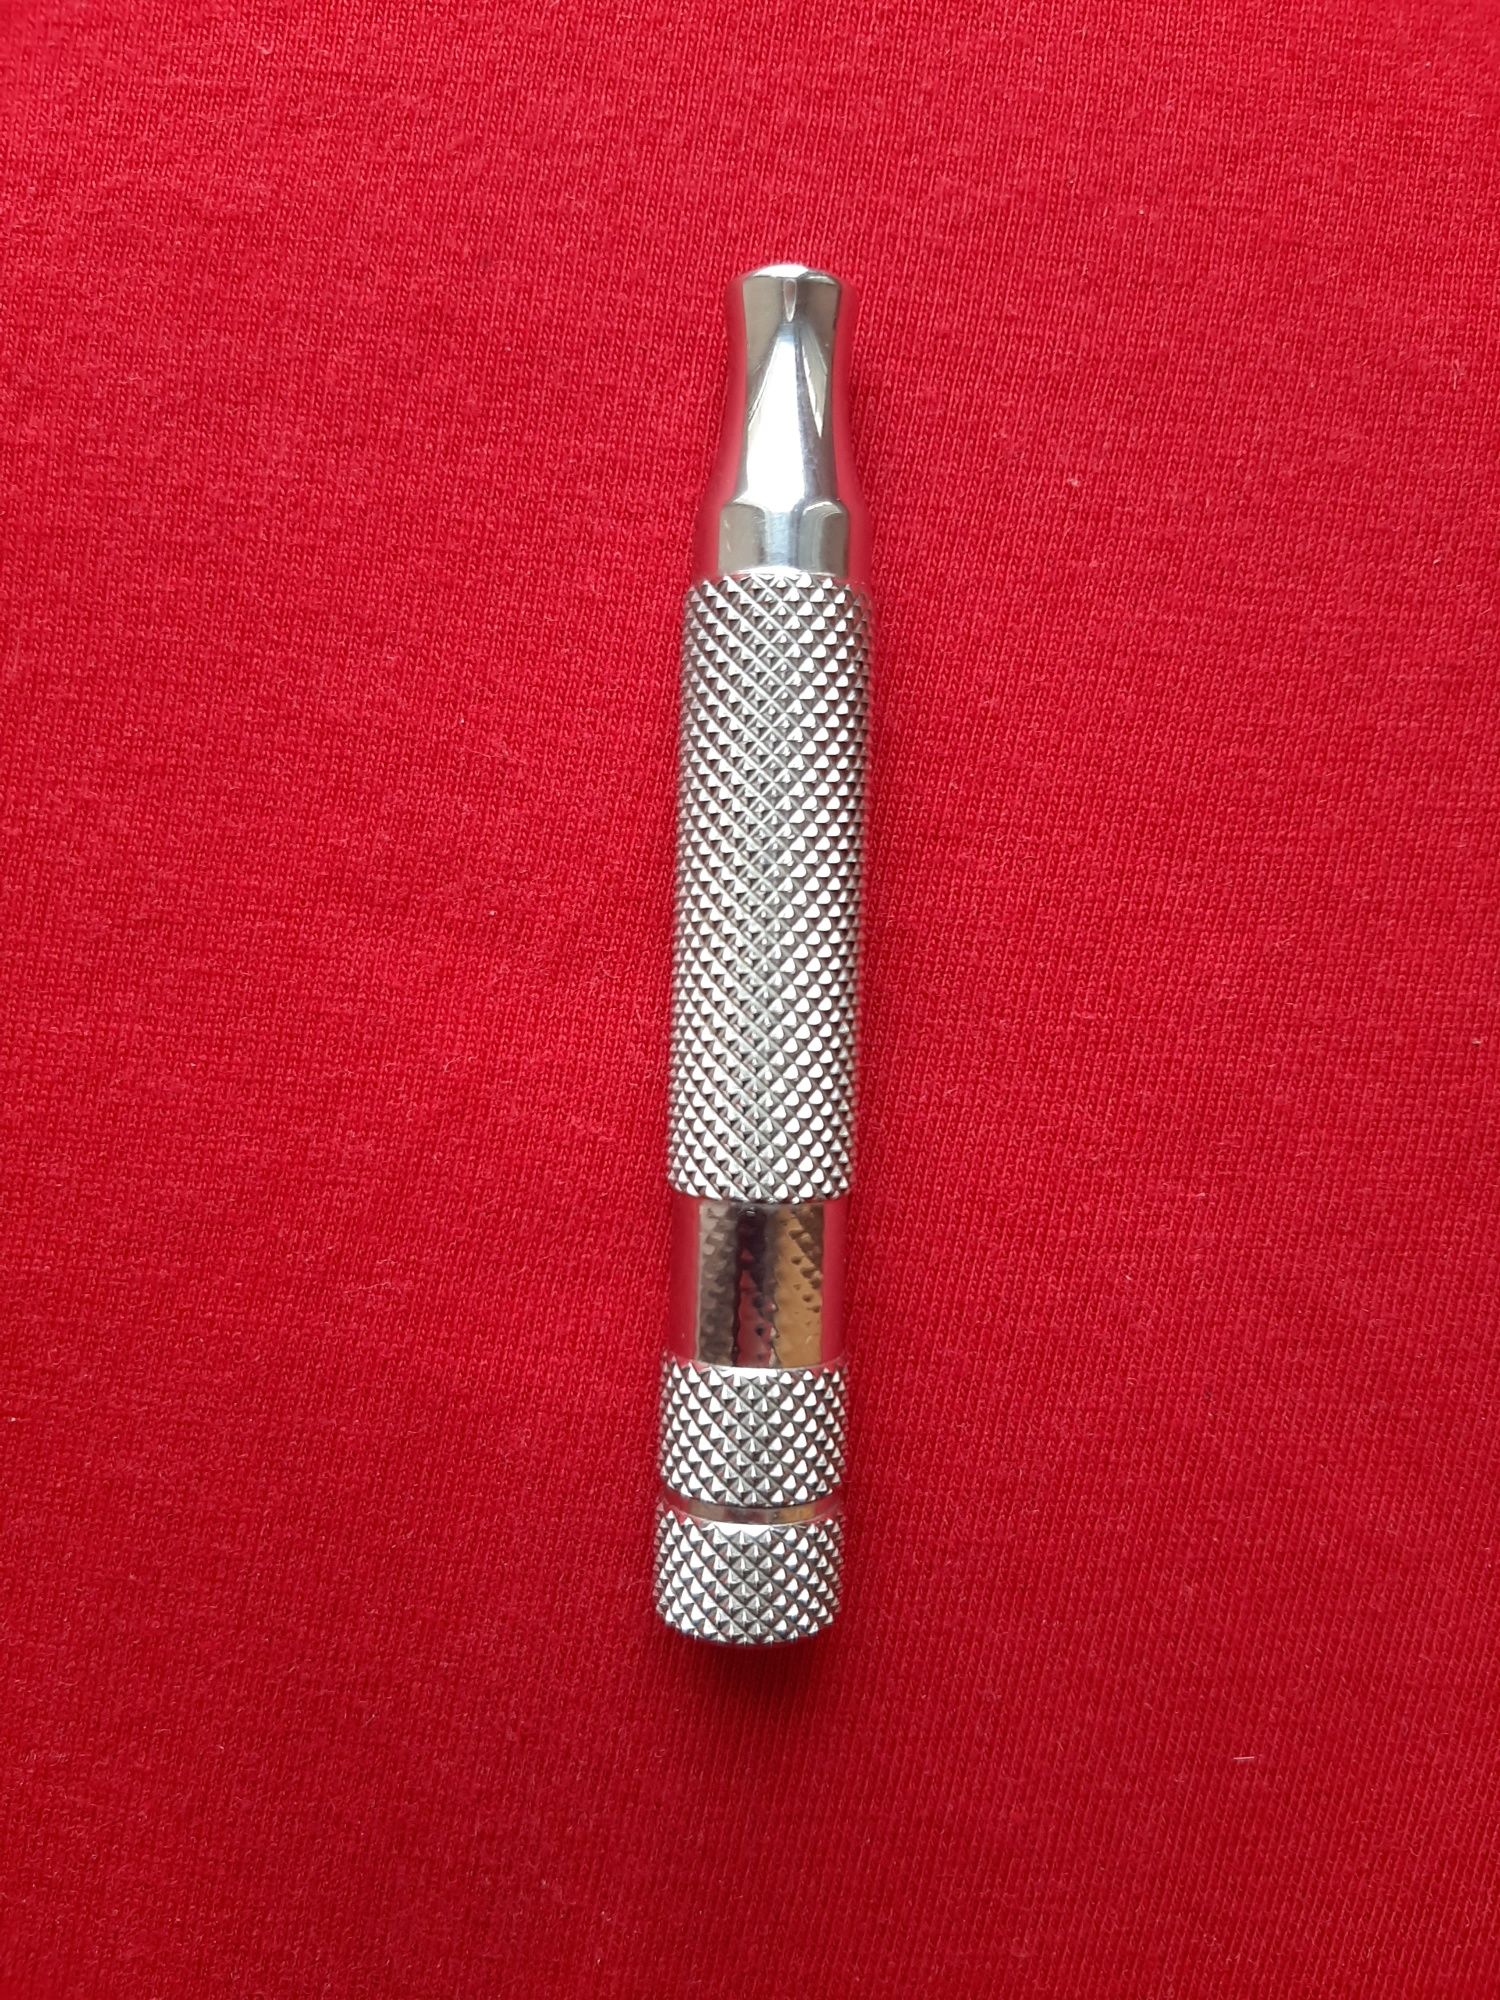 Бритвенный станок для бритья (ручка)